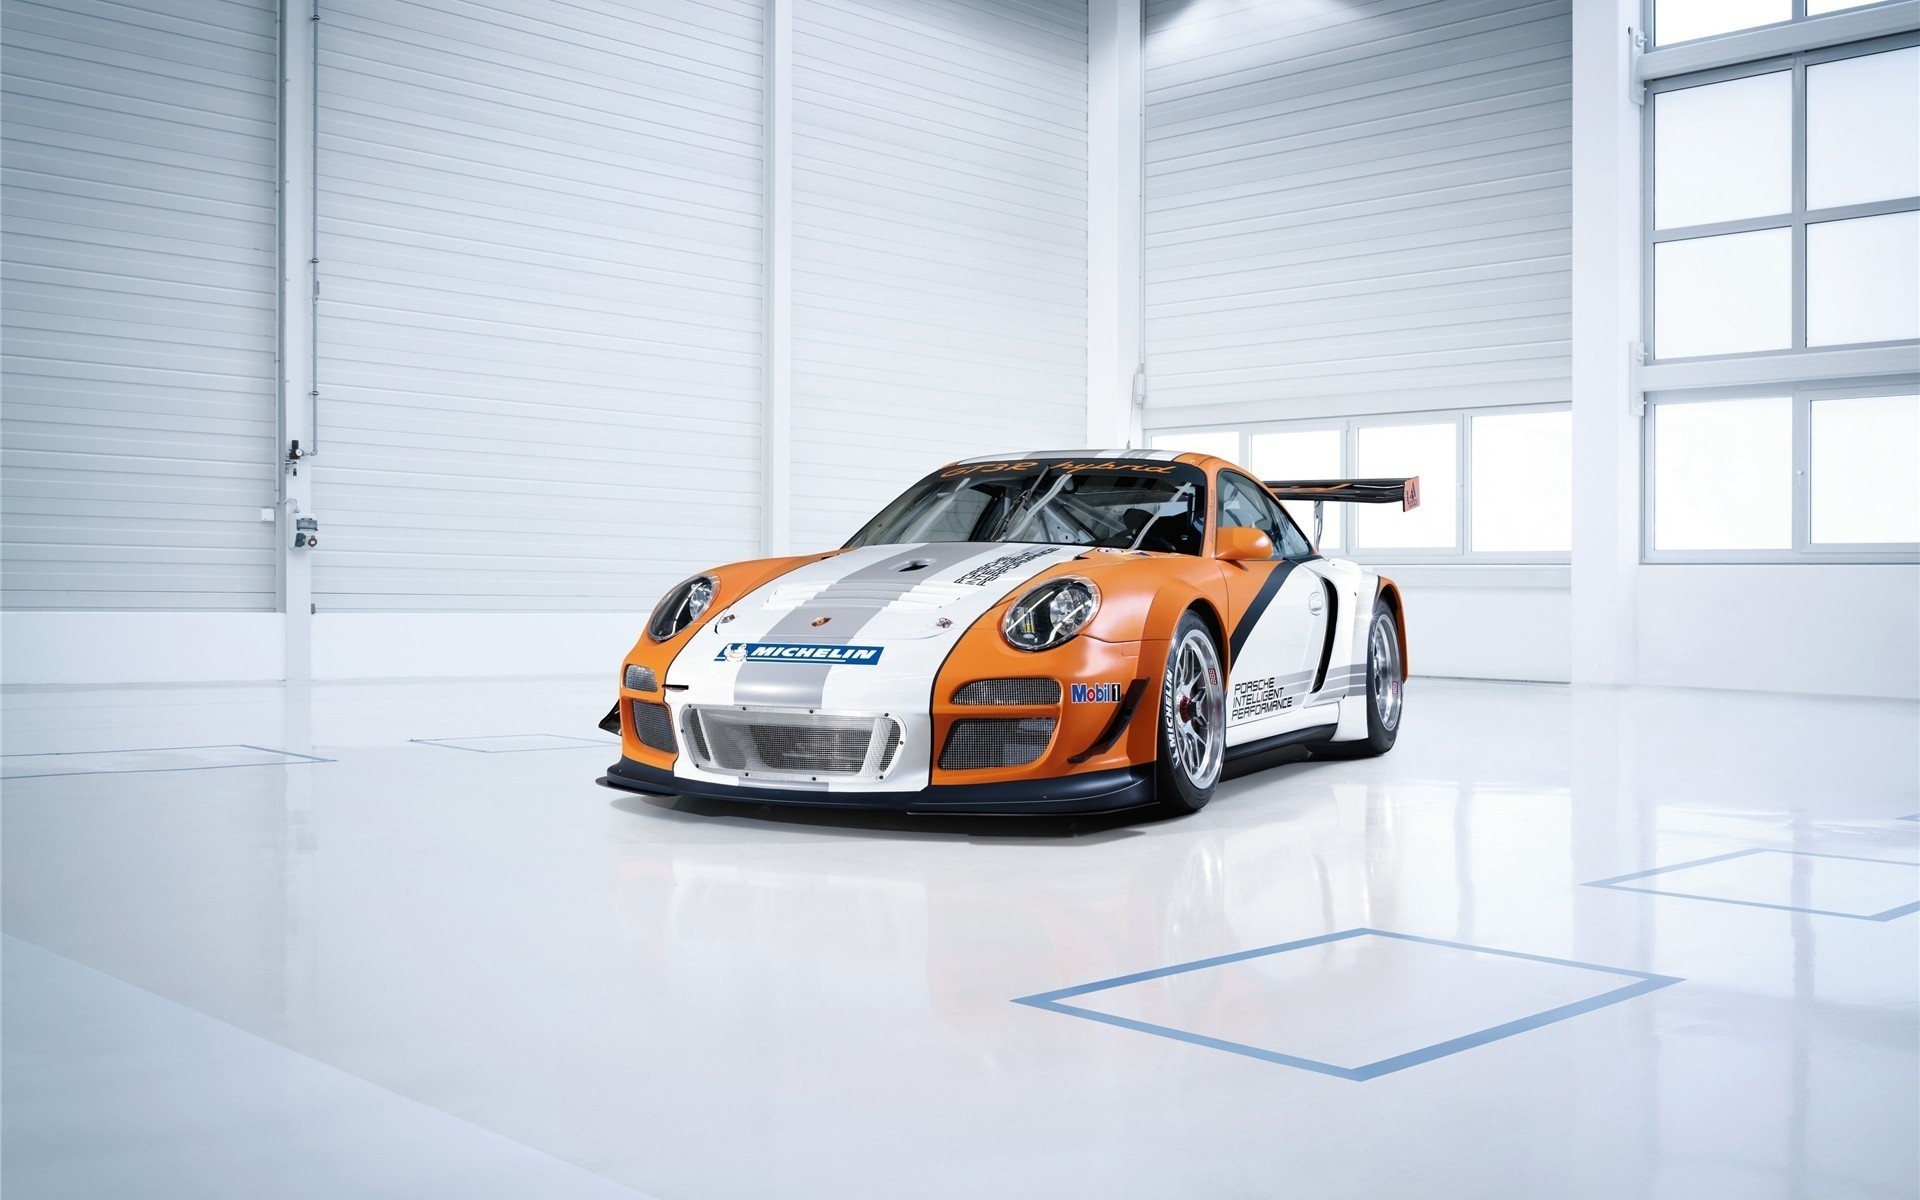 Porsche Race Car Garage Hd Wallpaper Cars Wallpaper Better